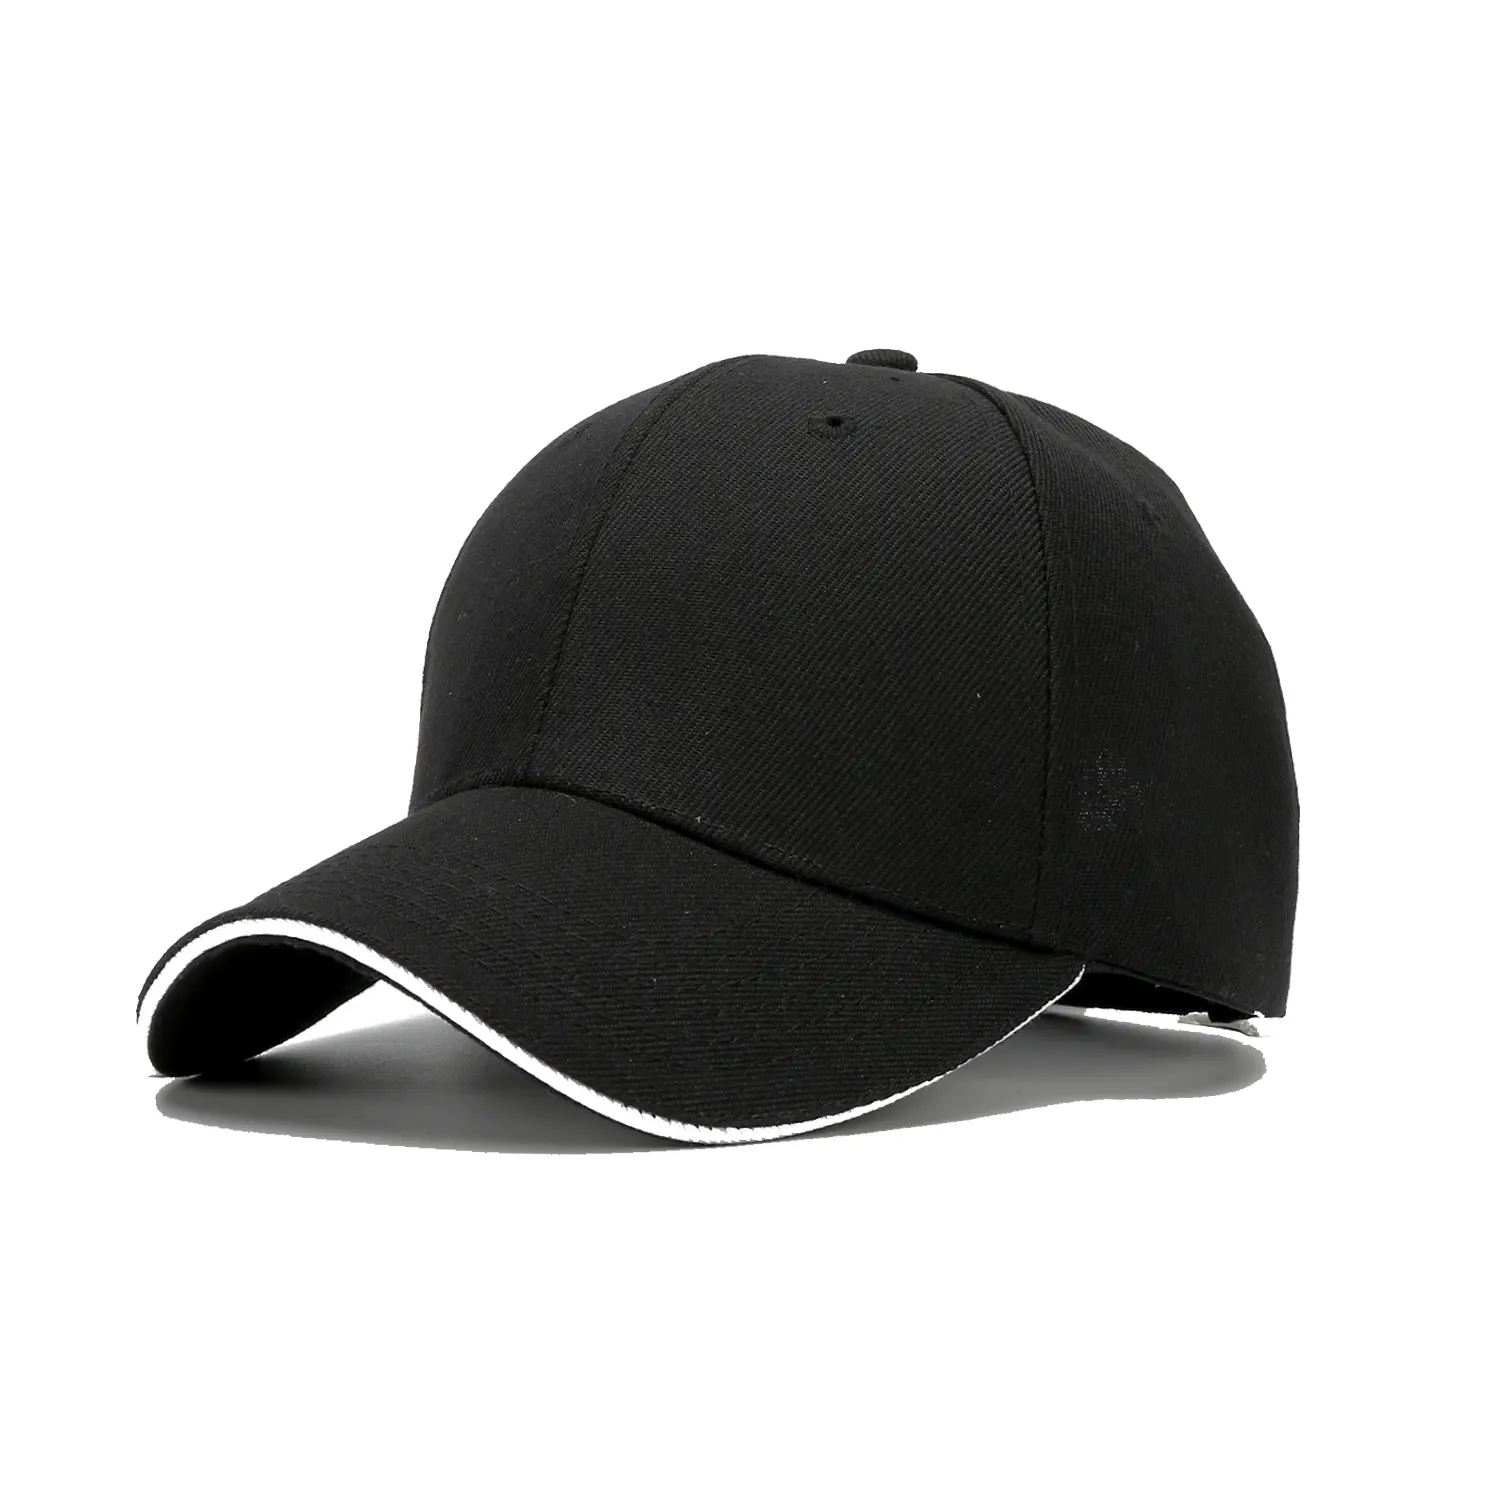 مصنع المعدات الأصلية قبعات فارغة شعار مخصص مطرزة الجملة قبعات البيسبول السوداء للرجال